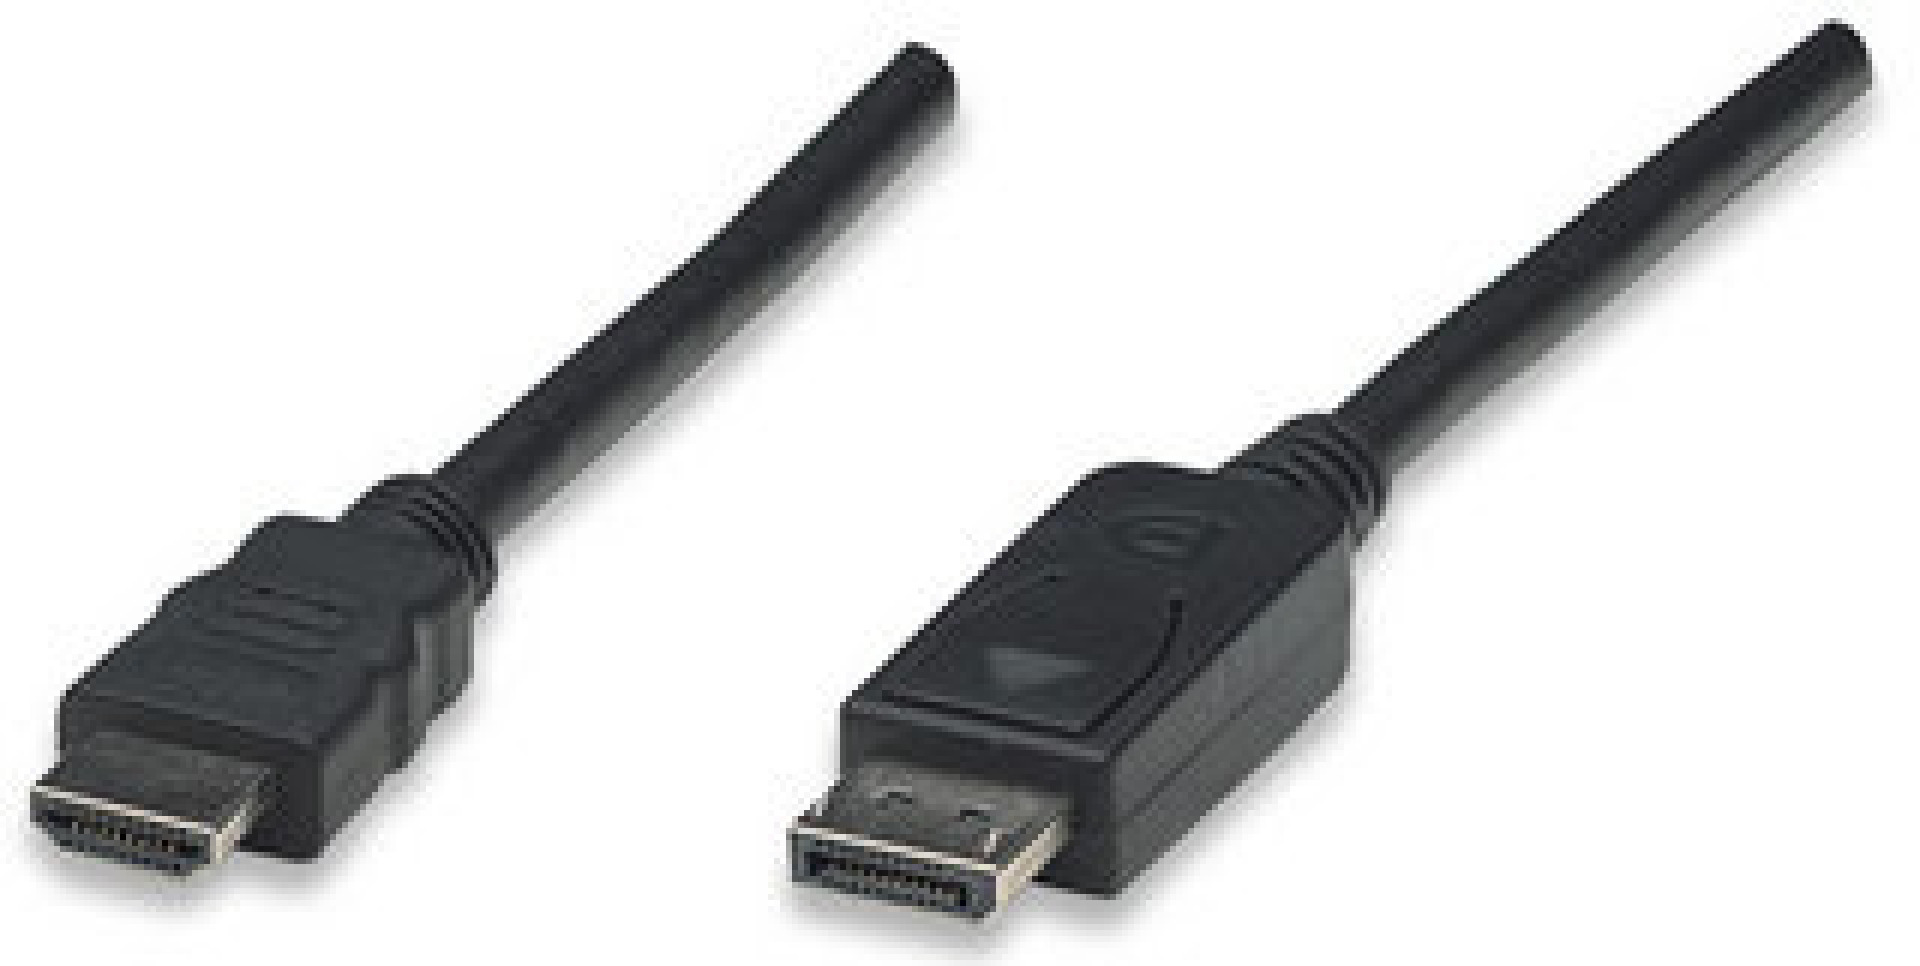 Konverterkabel DisplayPort 1.1 auf HDMI, schwarz, 3 m